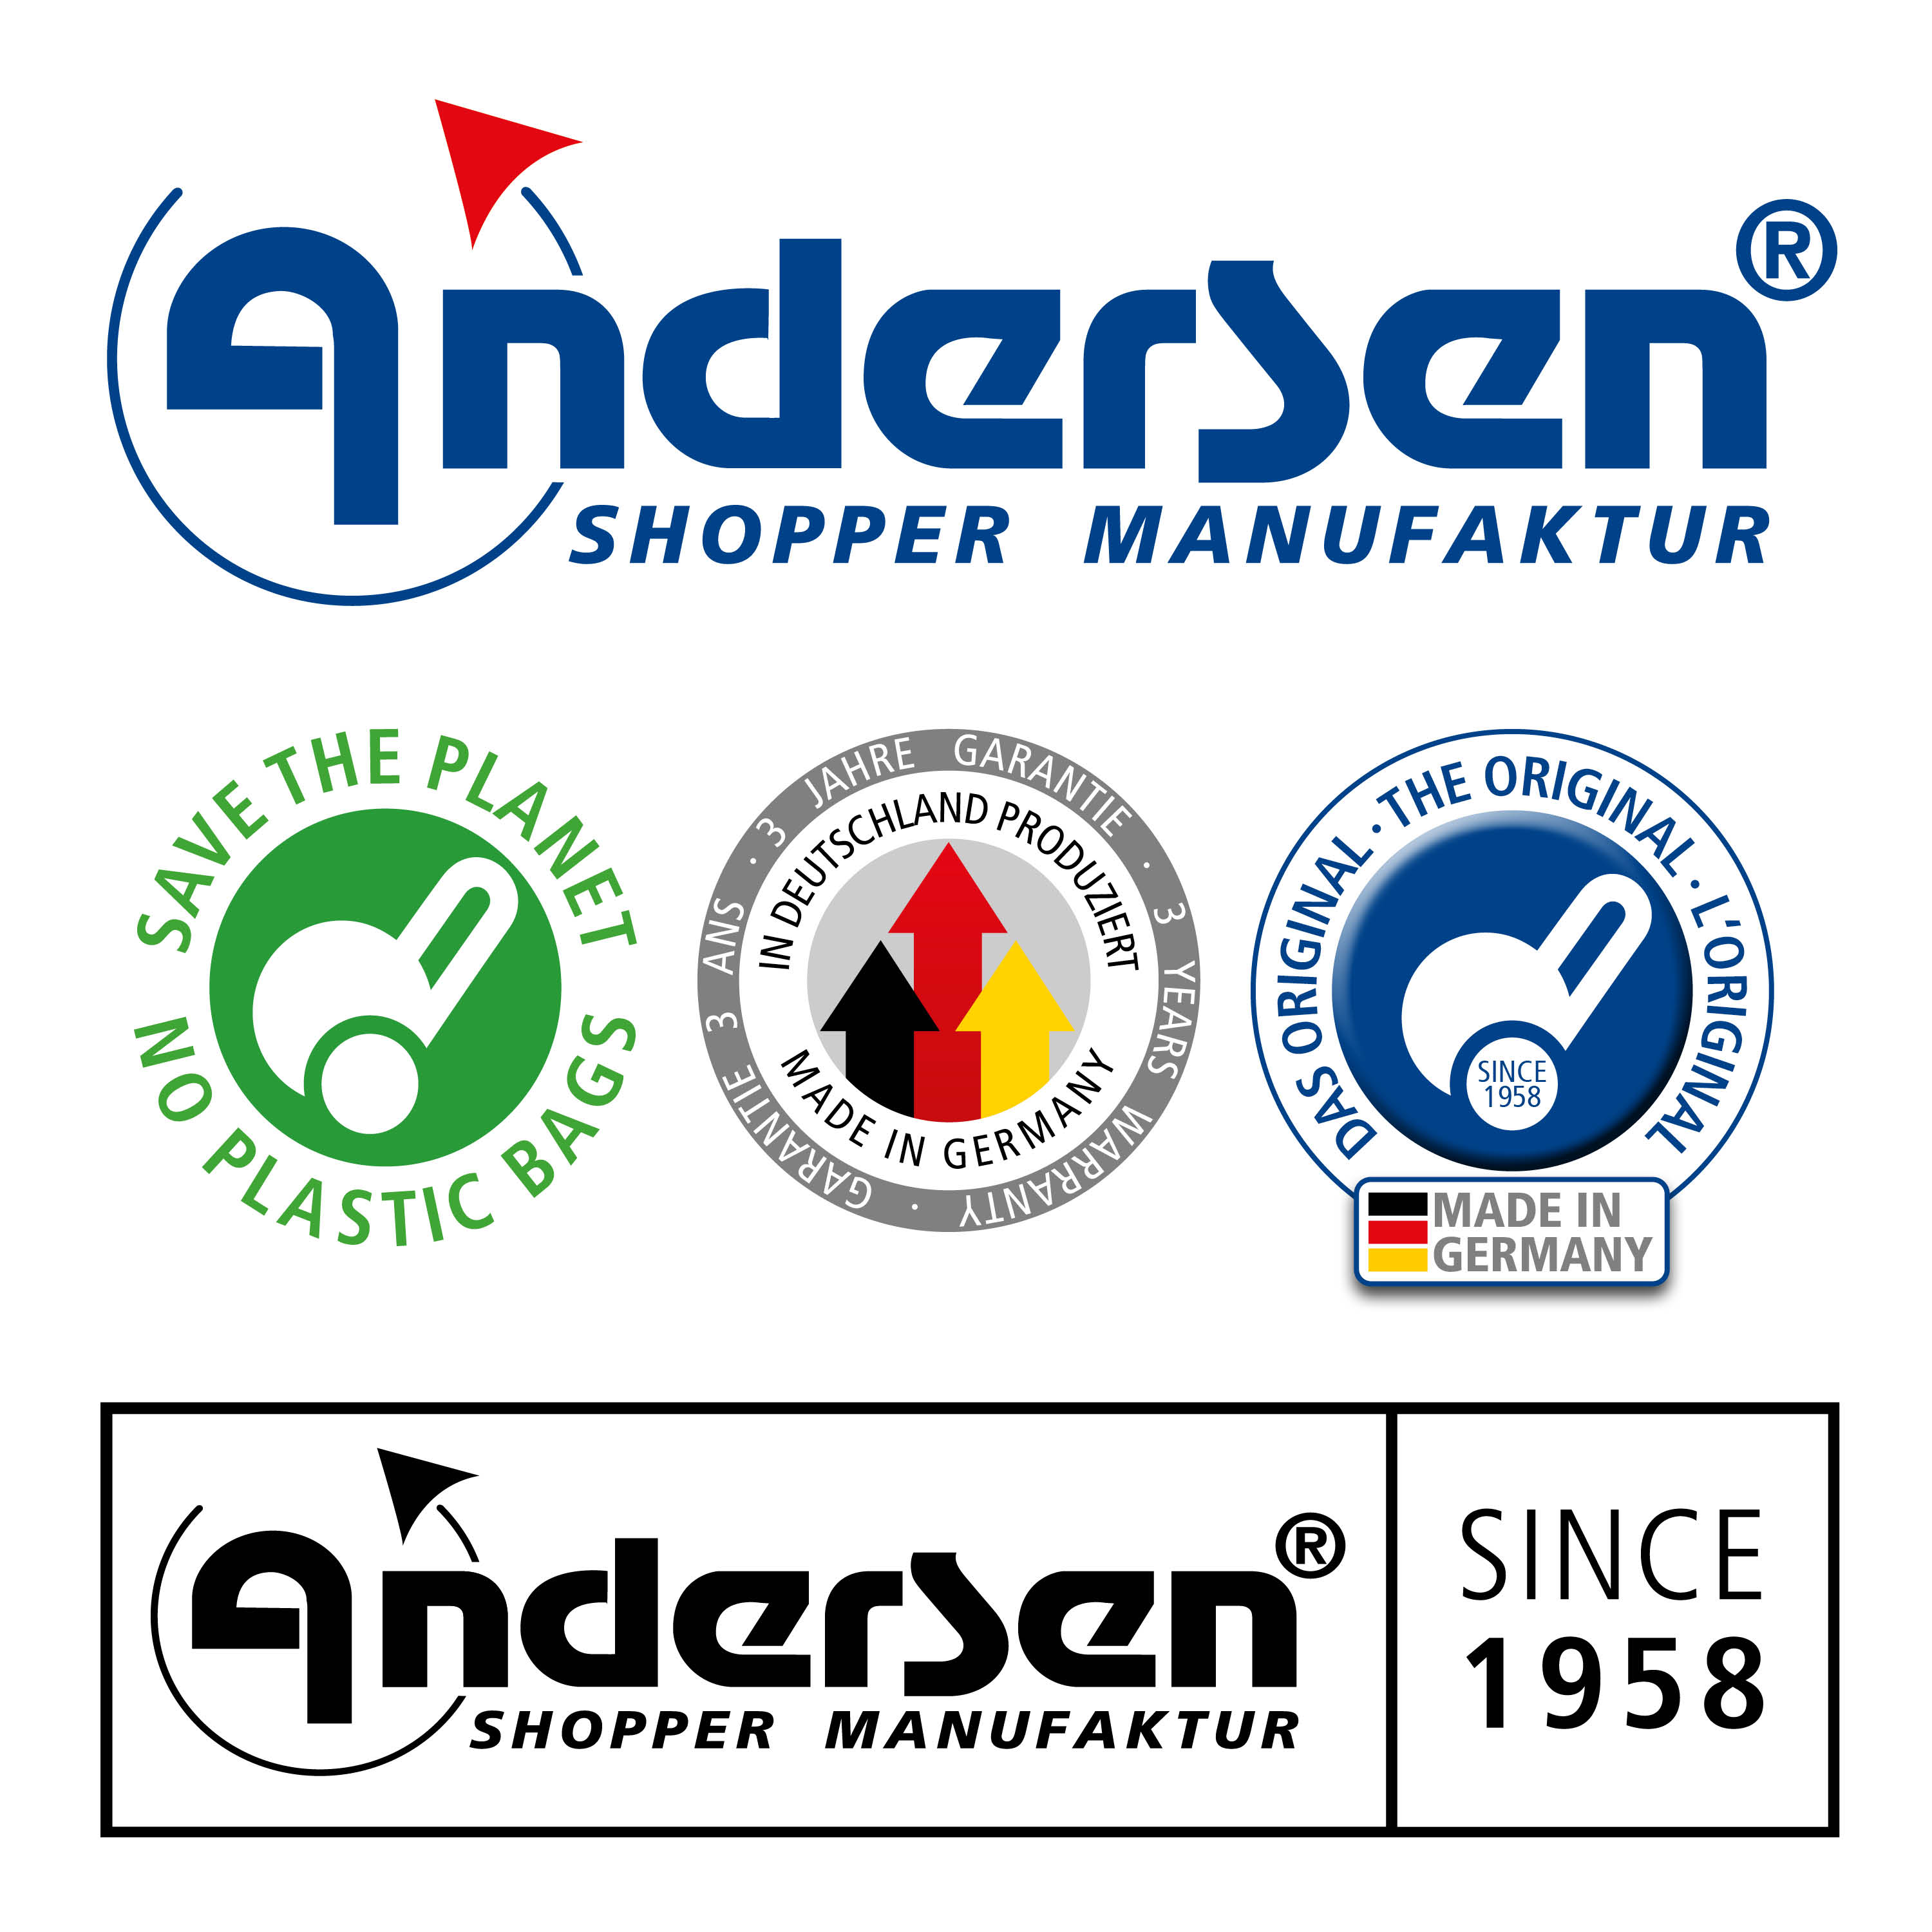 Andersen Royal Shopper mit Tasche Ortlieb in Gelb, Anthrazit, Rot oder Petrol, Kugellagerrad